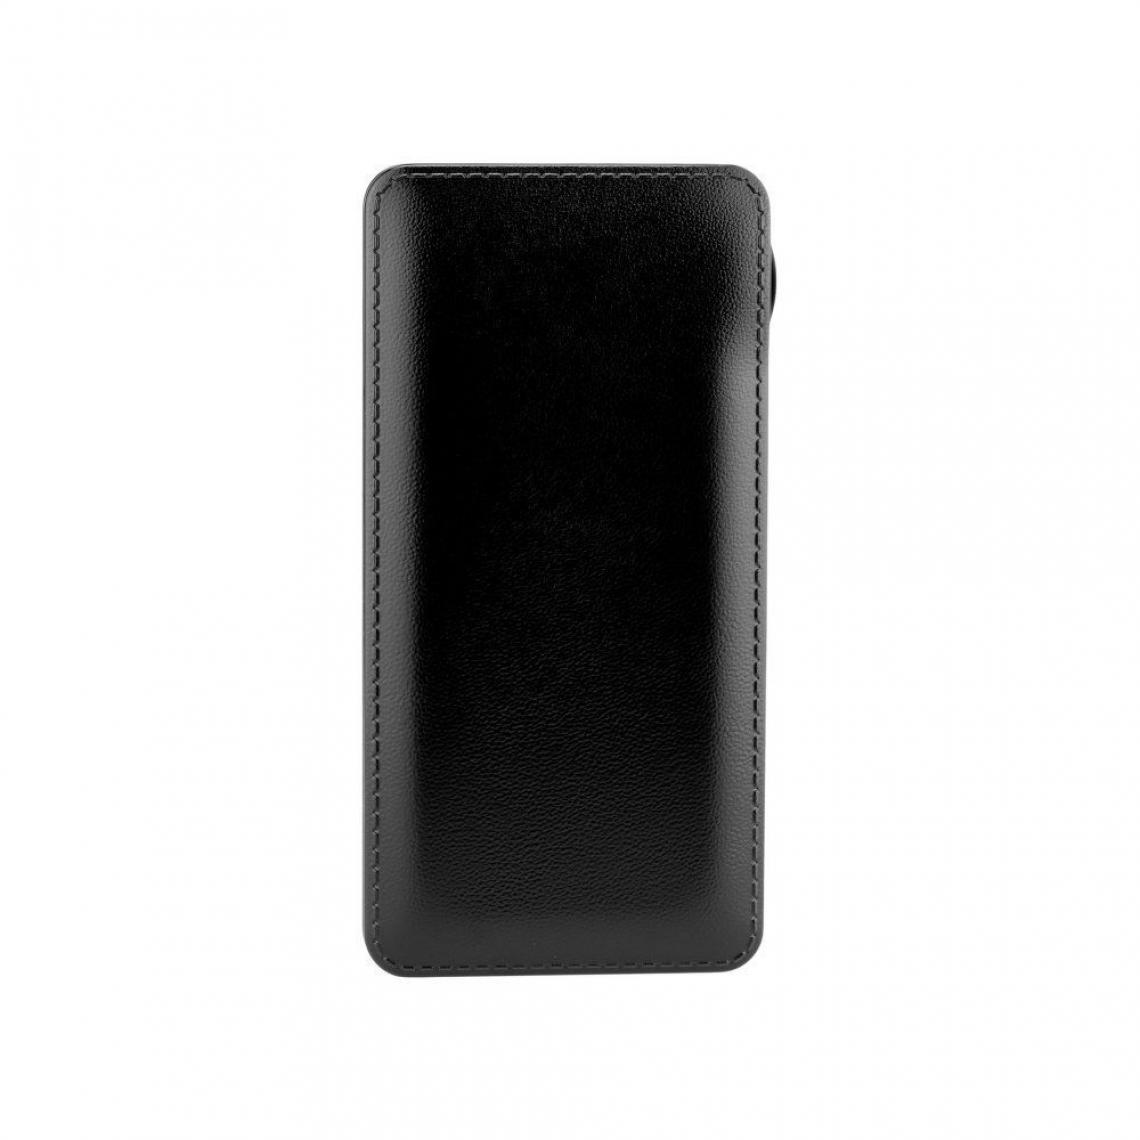 Ozzzo - Chargeur batterie externe 30000 mAh powerbank ozzzo noir pour Samsung Galaxy Tab S6 - Autres accessoires smartphone